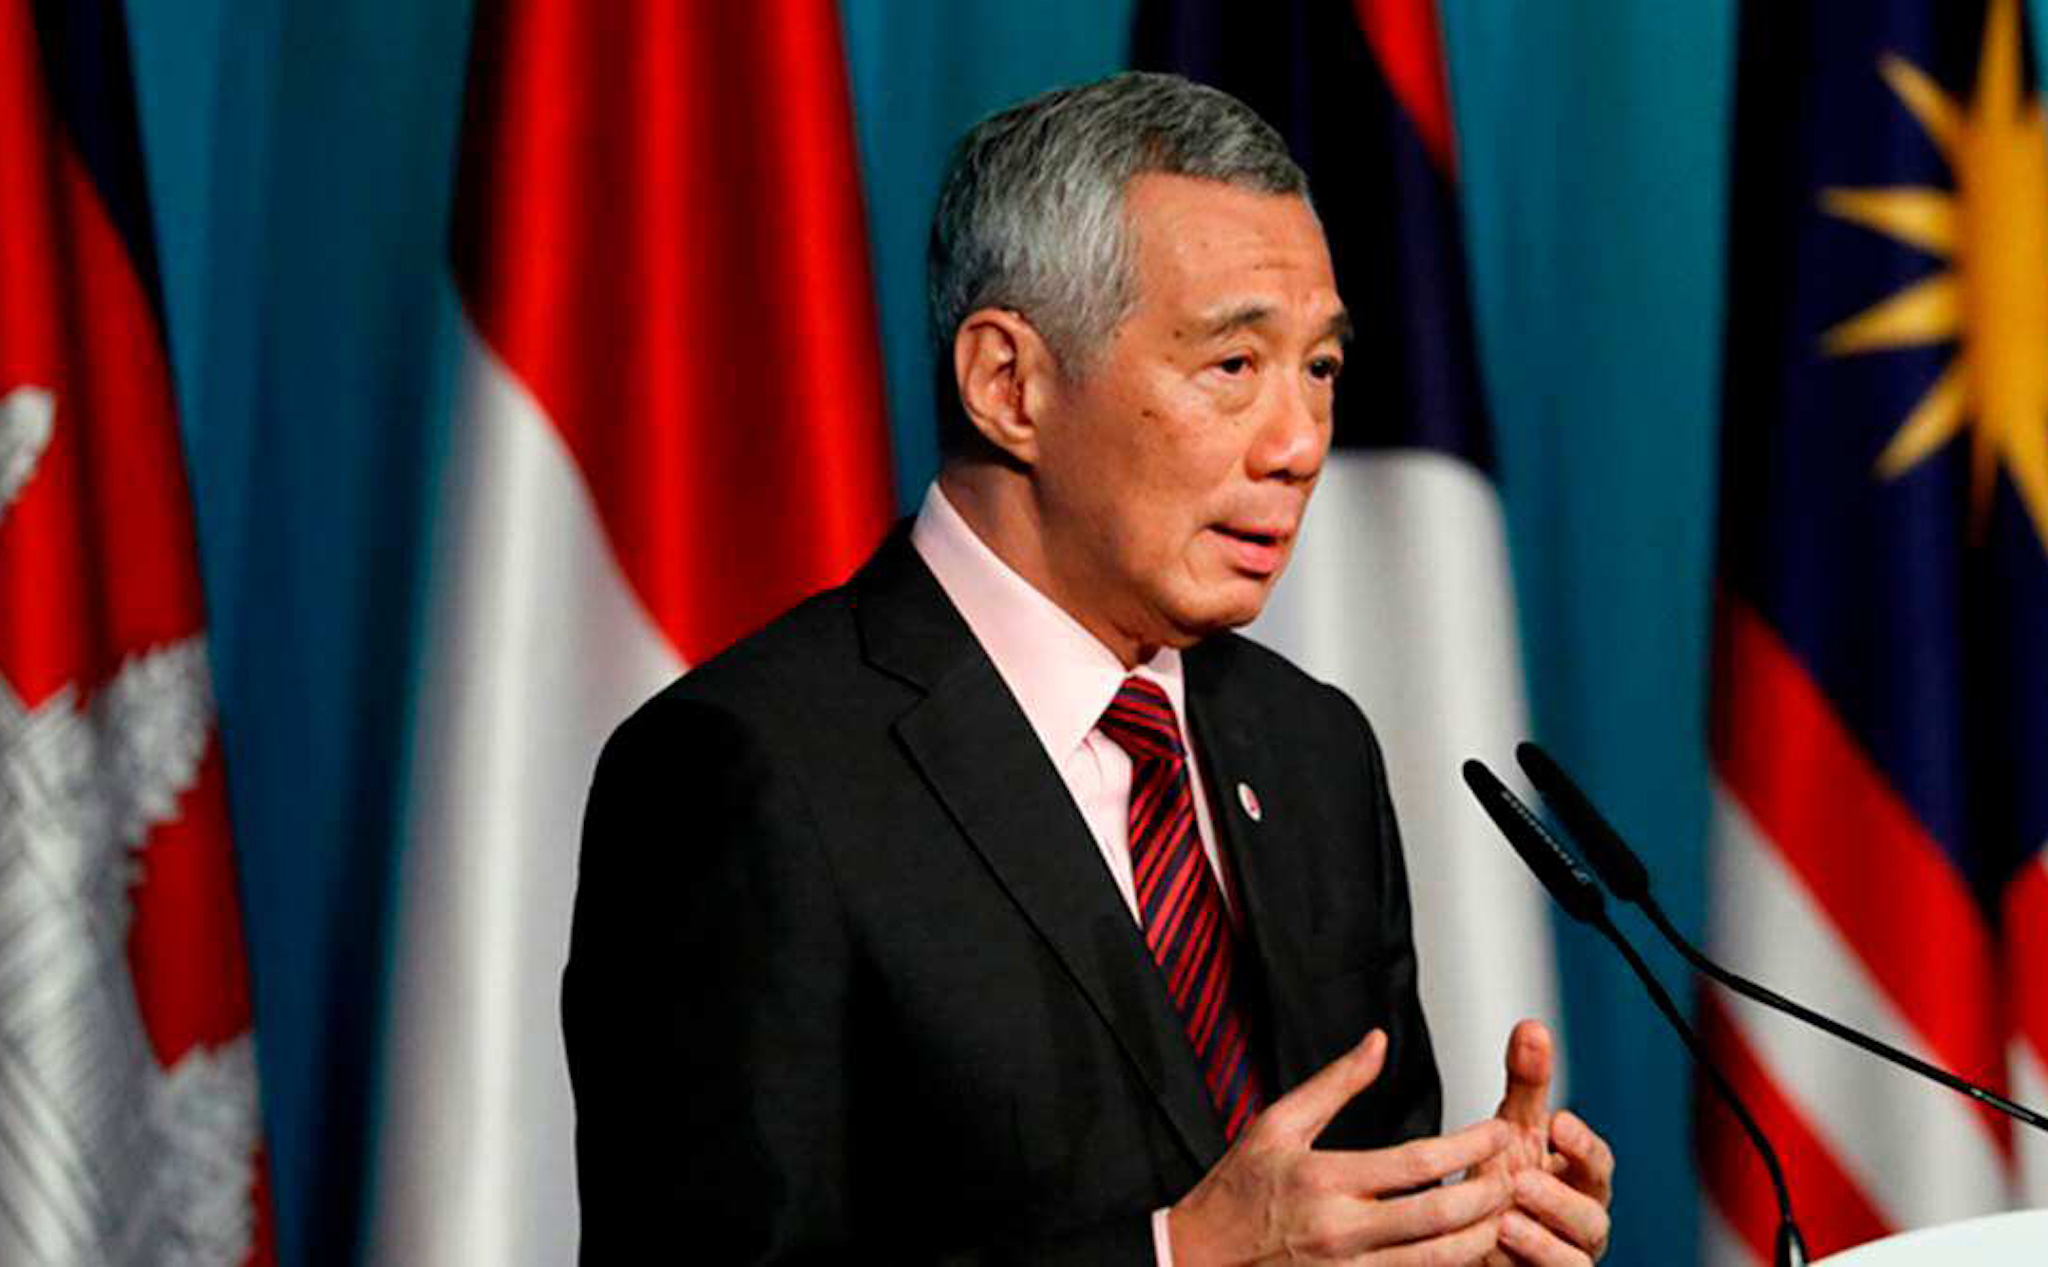 Viết sai thông tin, hai blogger đã phải bồi thường cho Thủ tướng Singapore hơn 275.000 USD